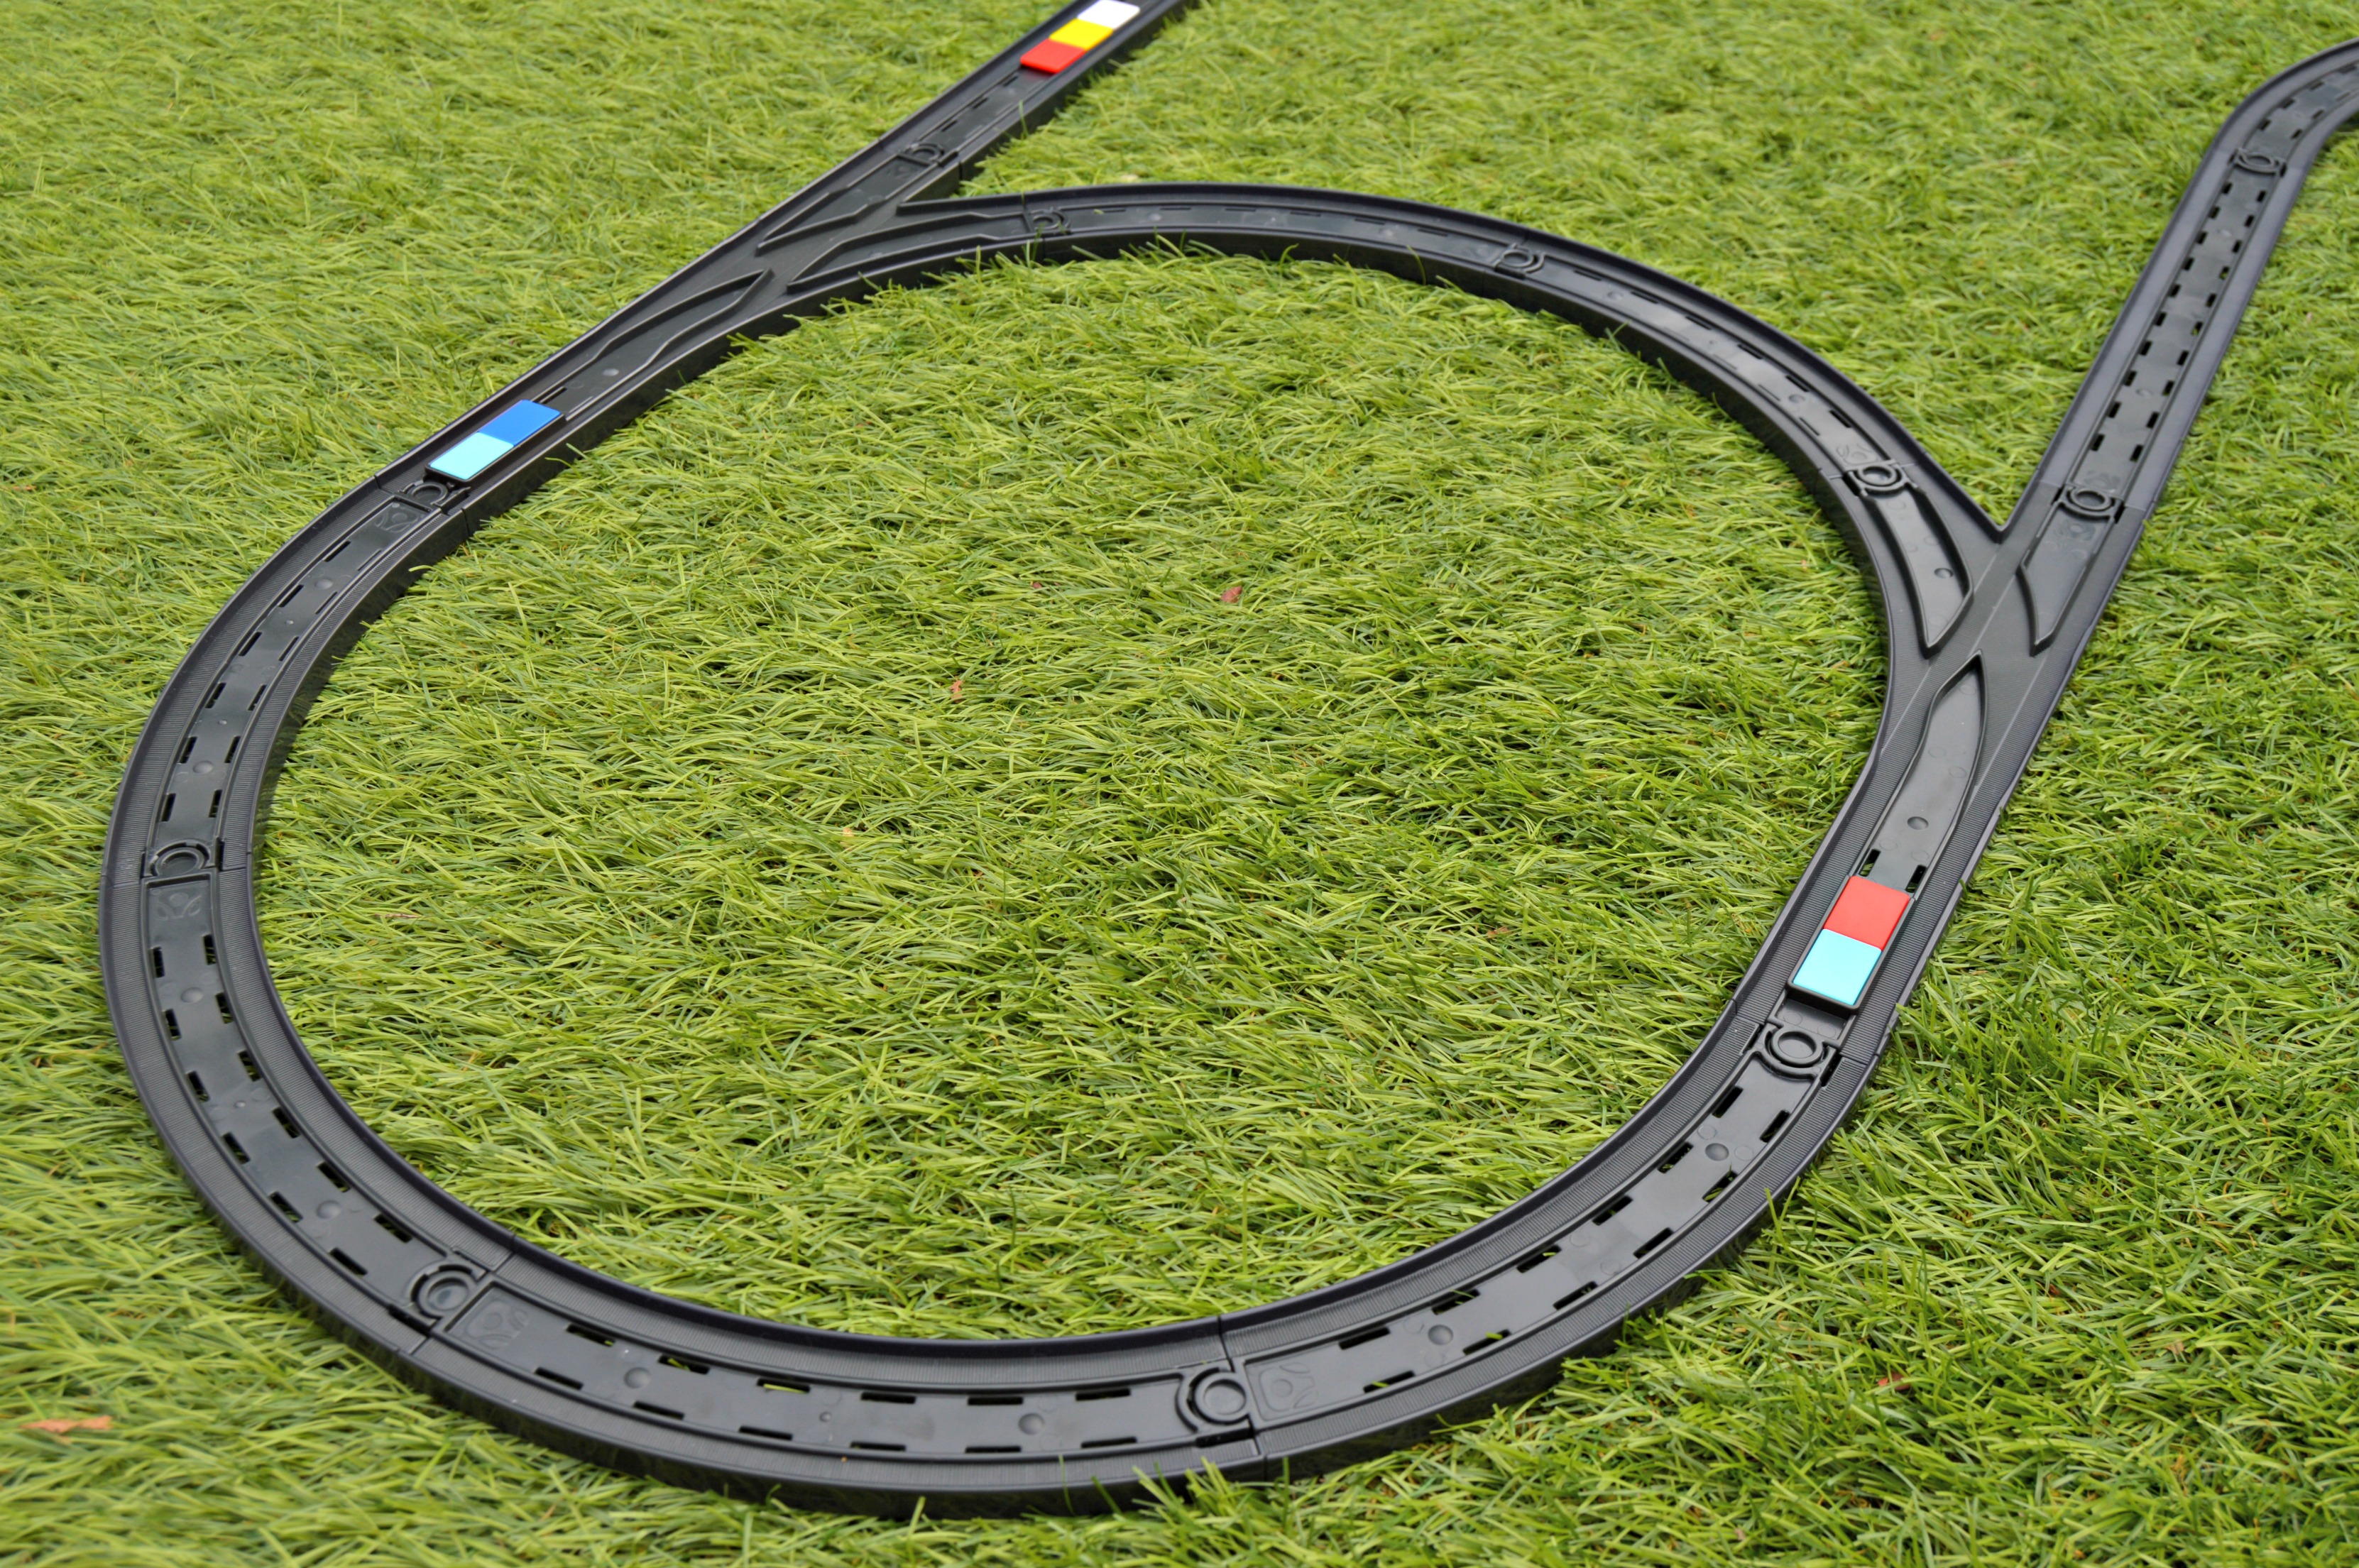 Intelino Train and Track